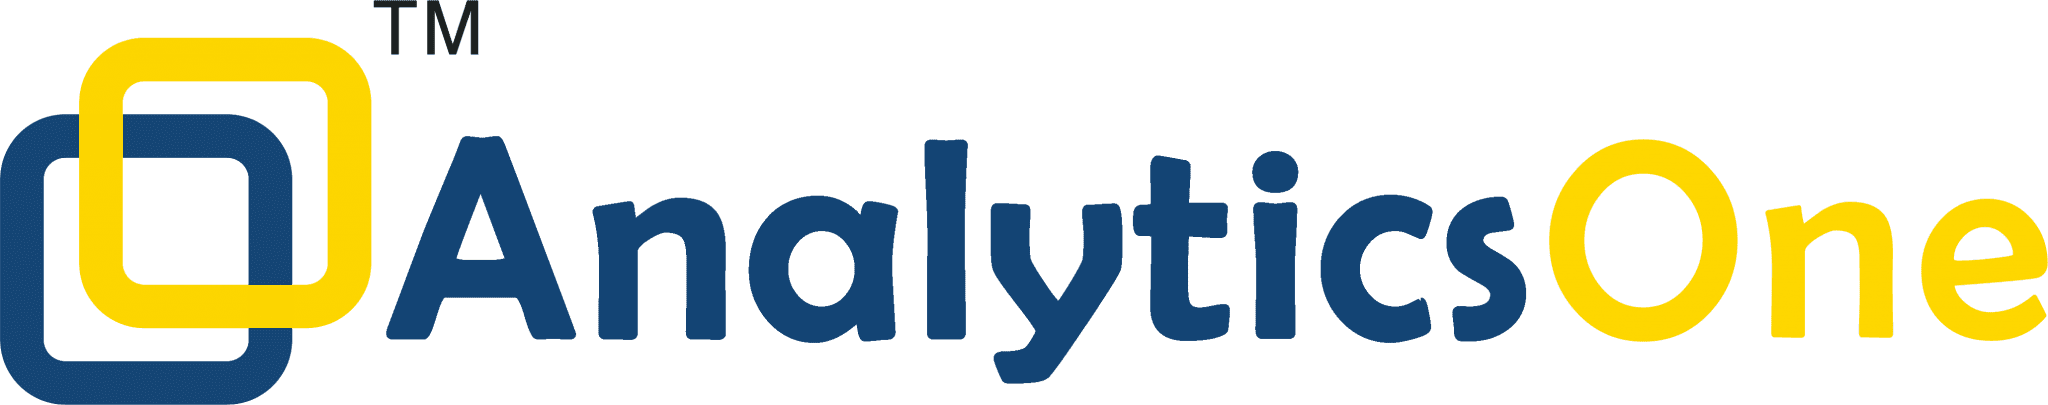 AnalyticsOne_Logo